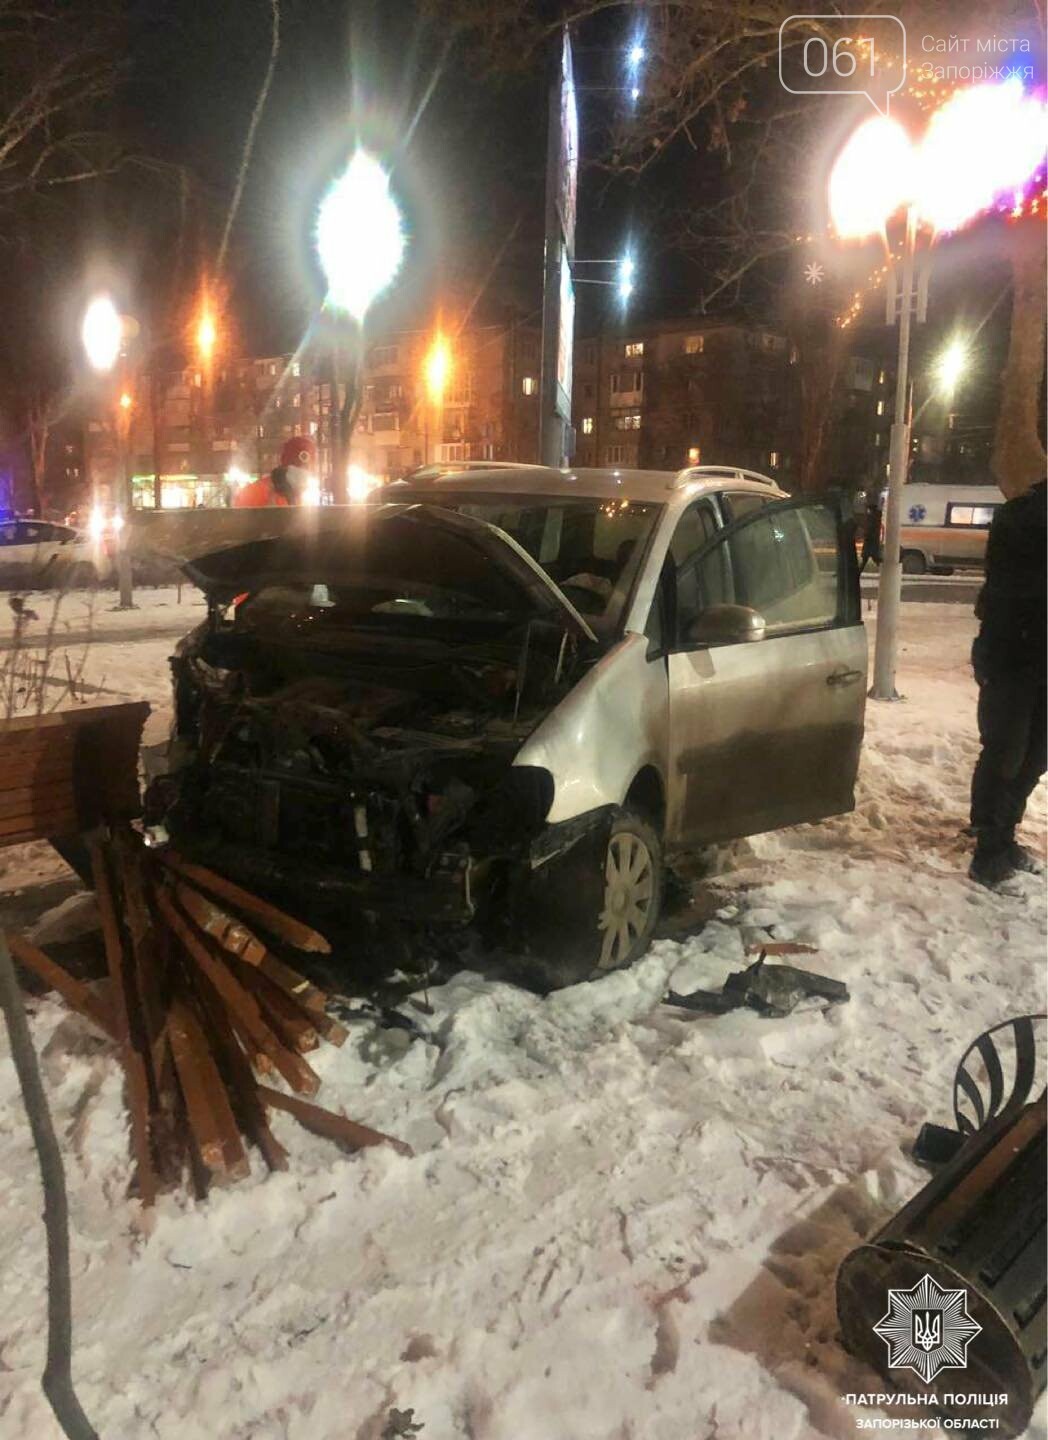 В Запорожье водитель Volkswagen проехал перекресток на красный, протаранил авто и влетел в лавочку, - ФОТО